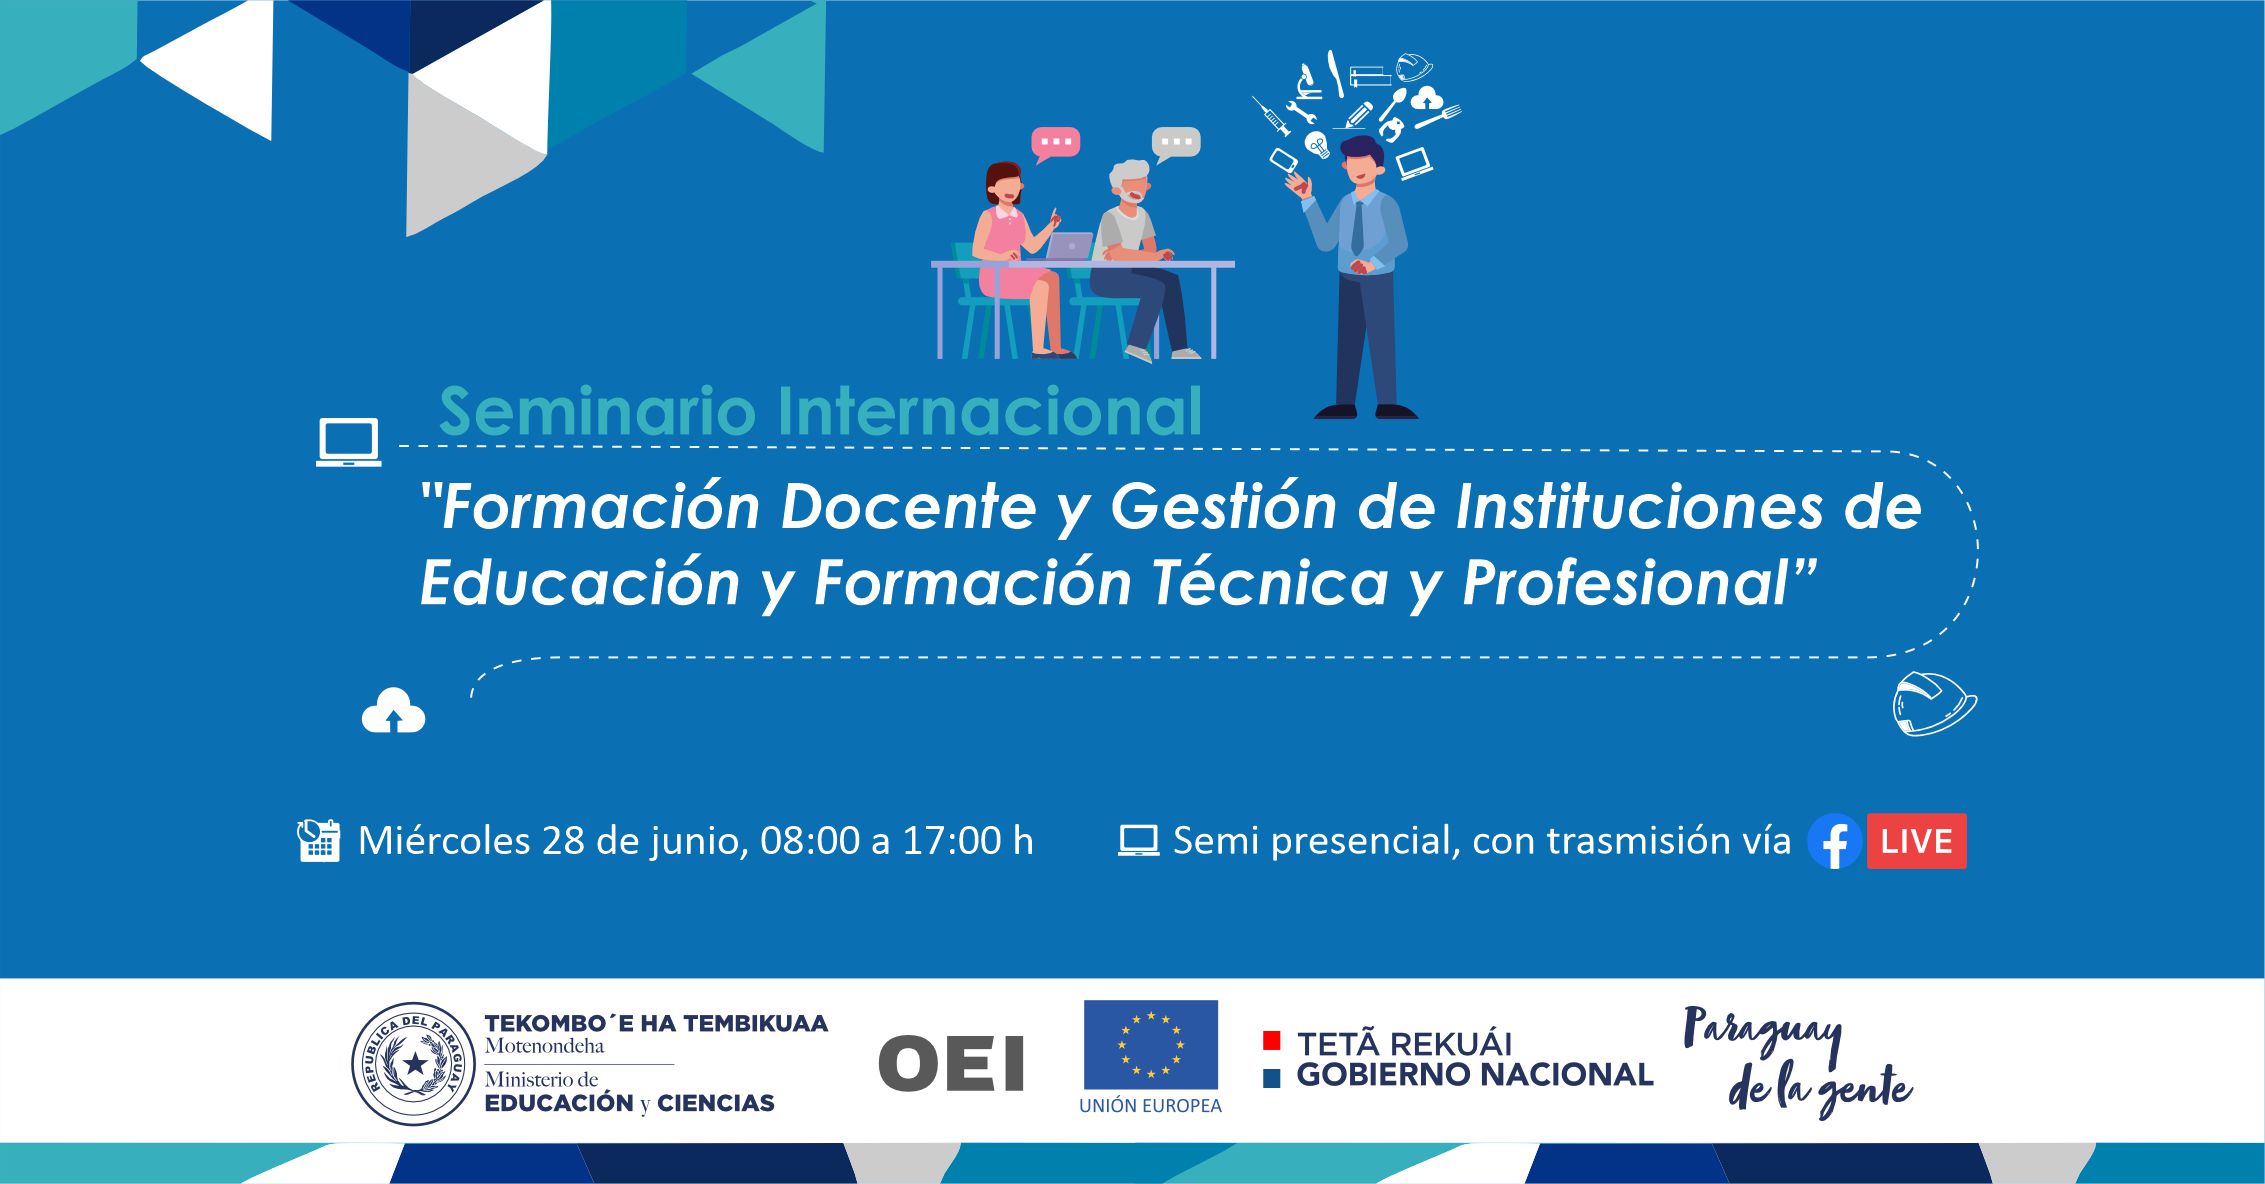 Organizan seminario internacional sobre avances y desafíos en la Educación y Formación Técnica y Profesional